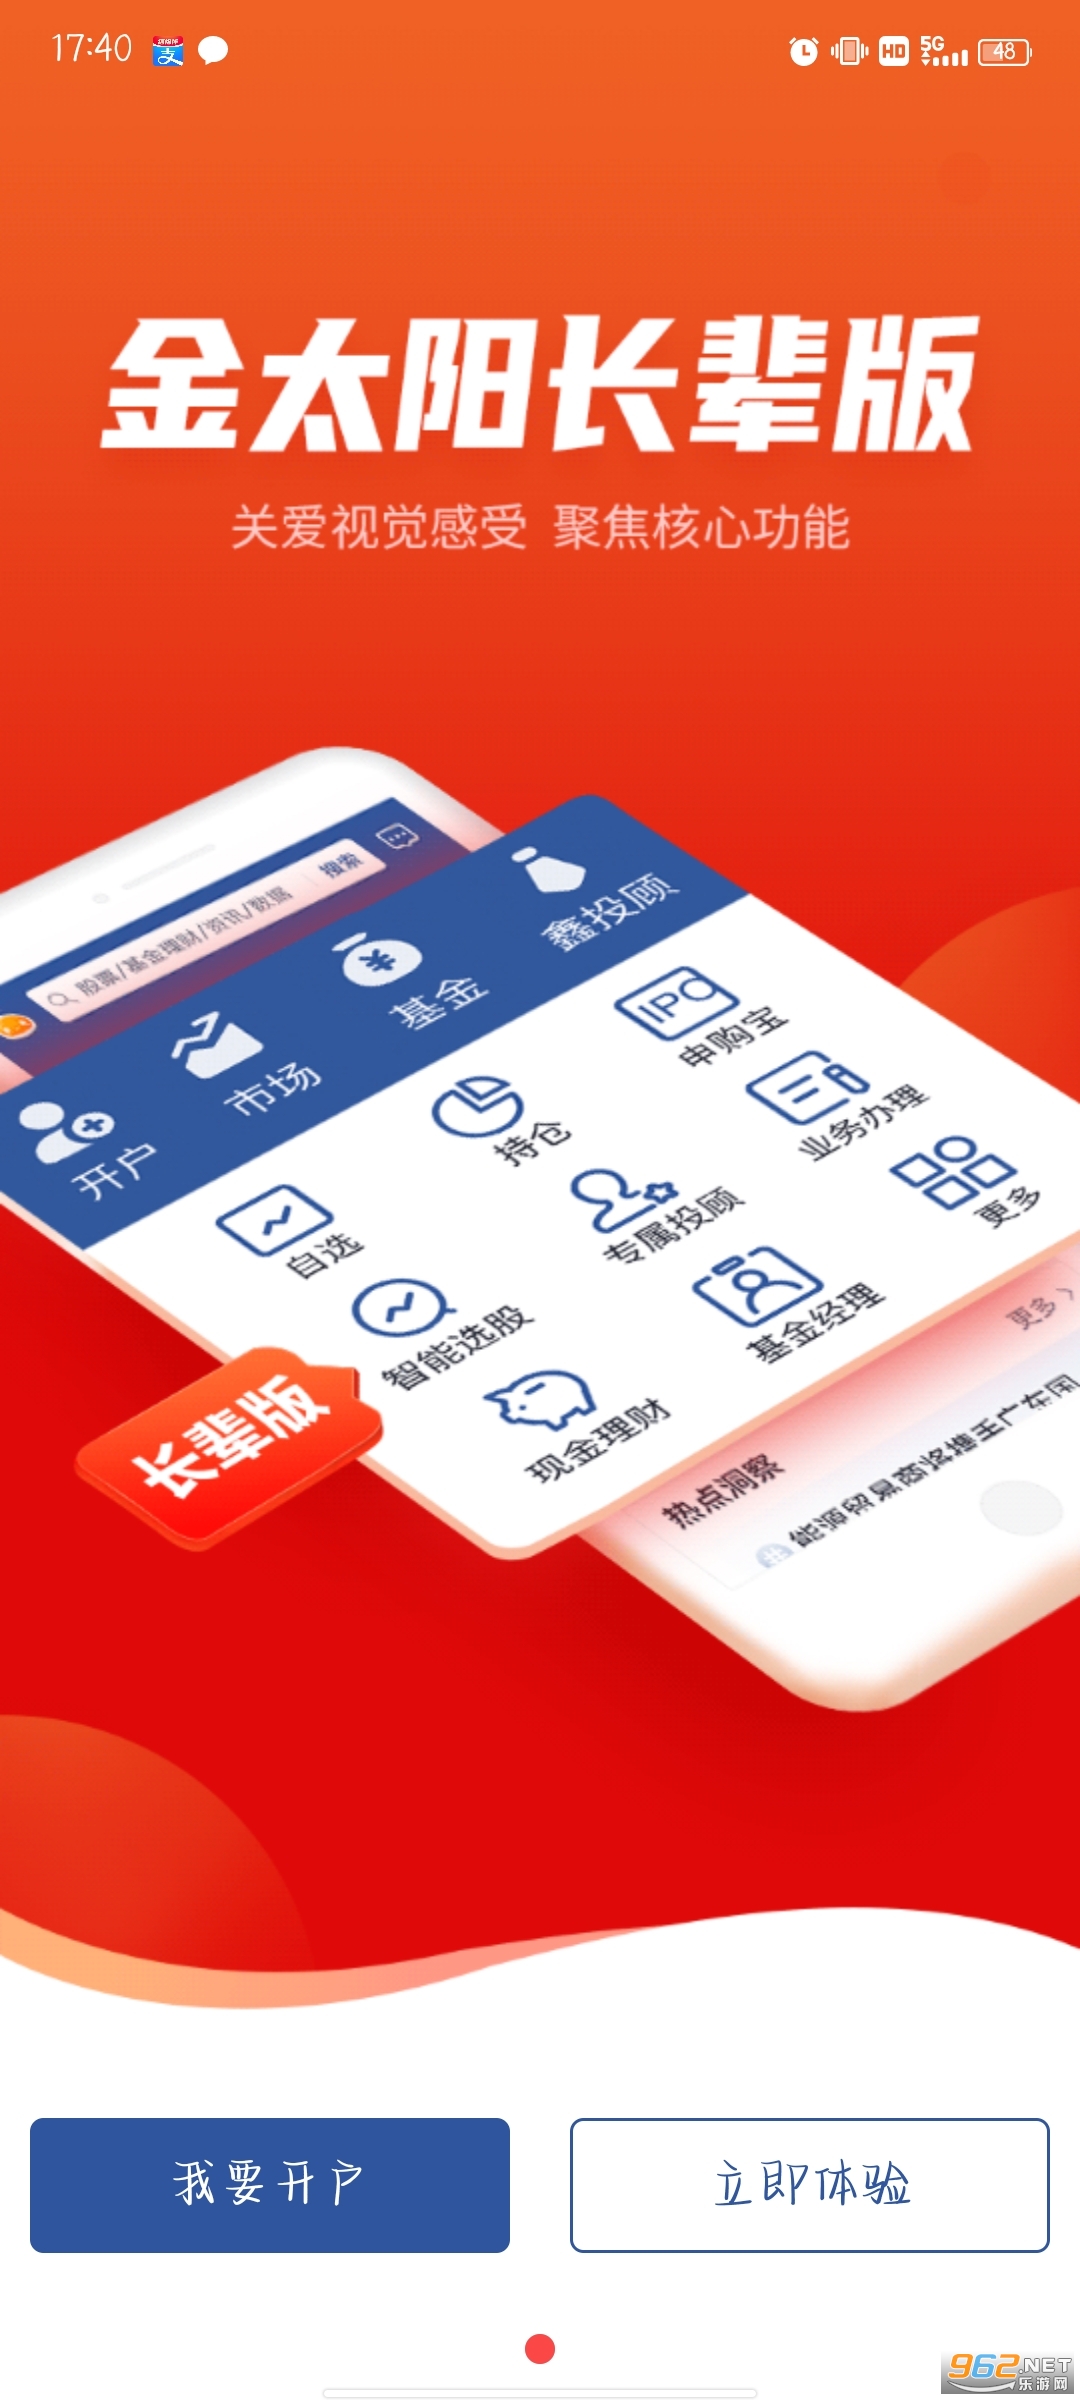 国信金太阳app 手机版 v5.8.0